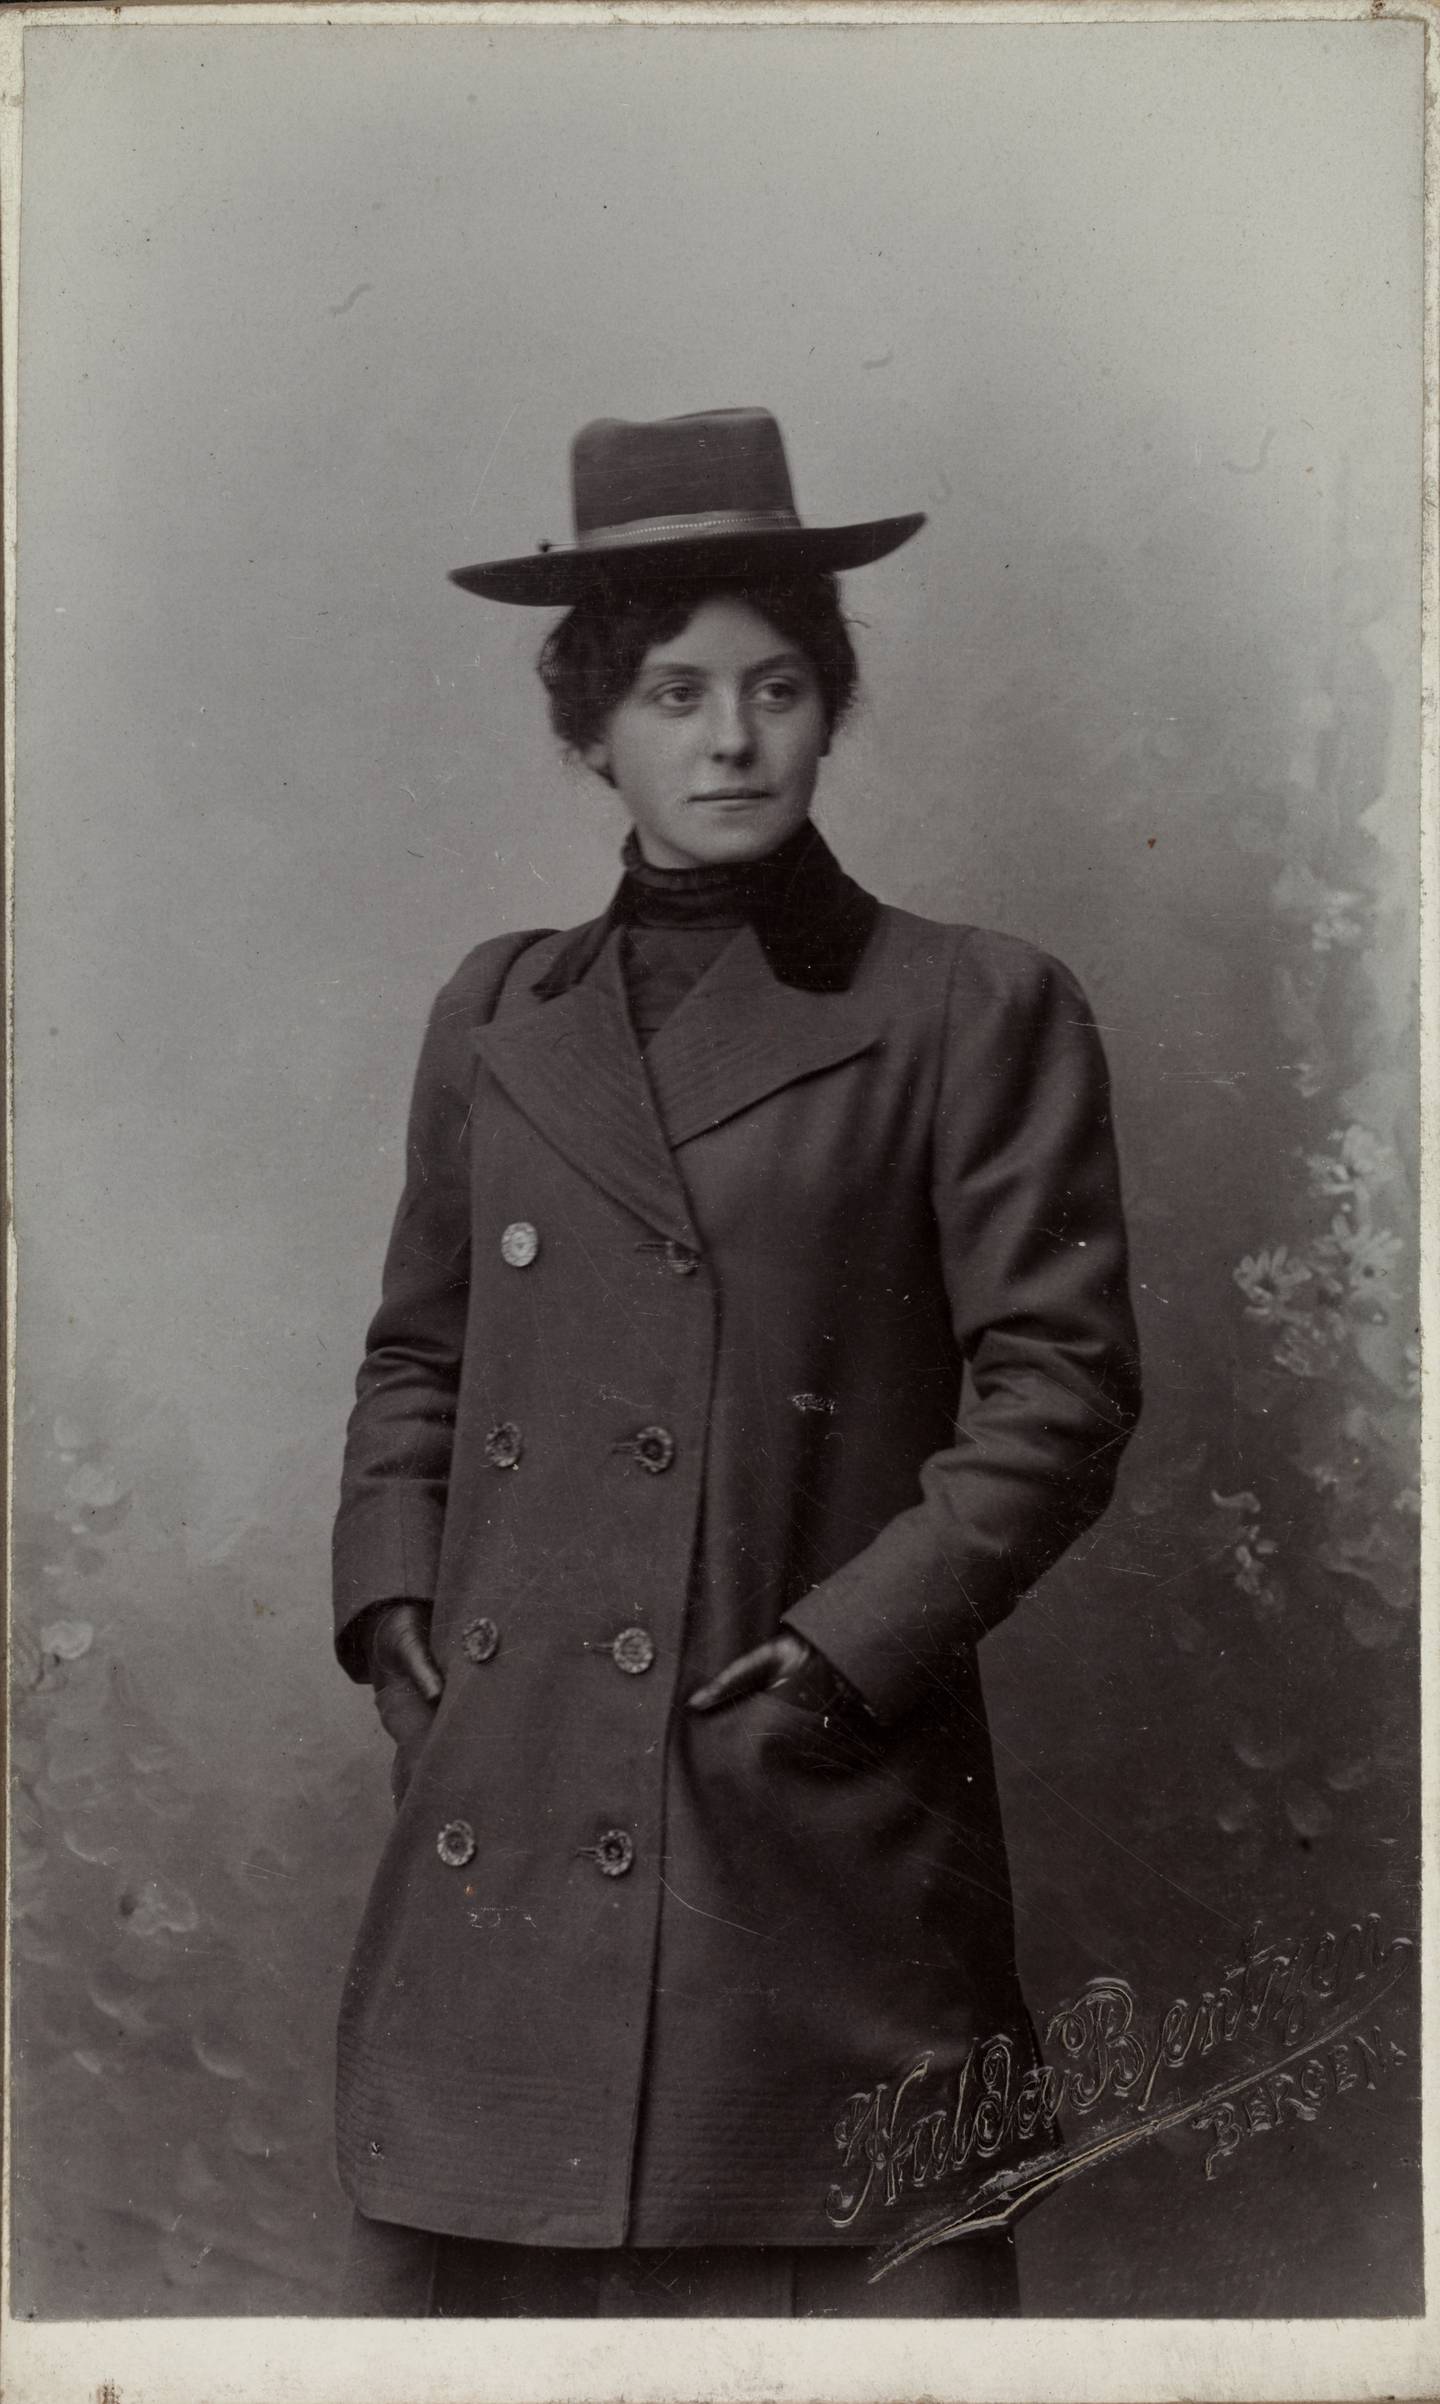 Rachel Helland (senere Grepp) (1879-1961), rundt 1900.